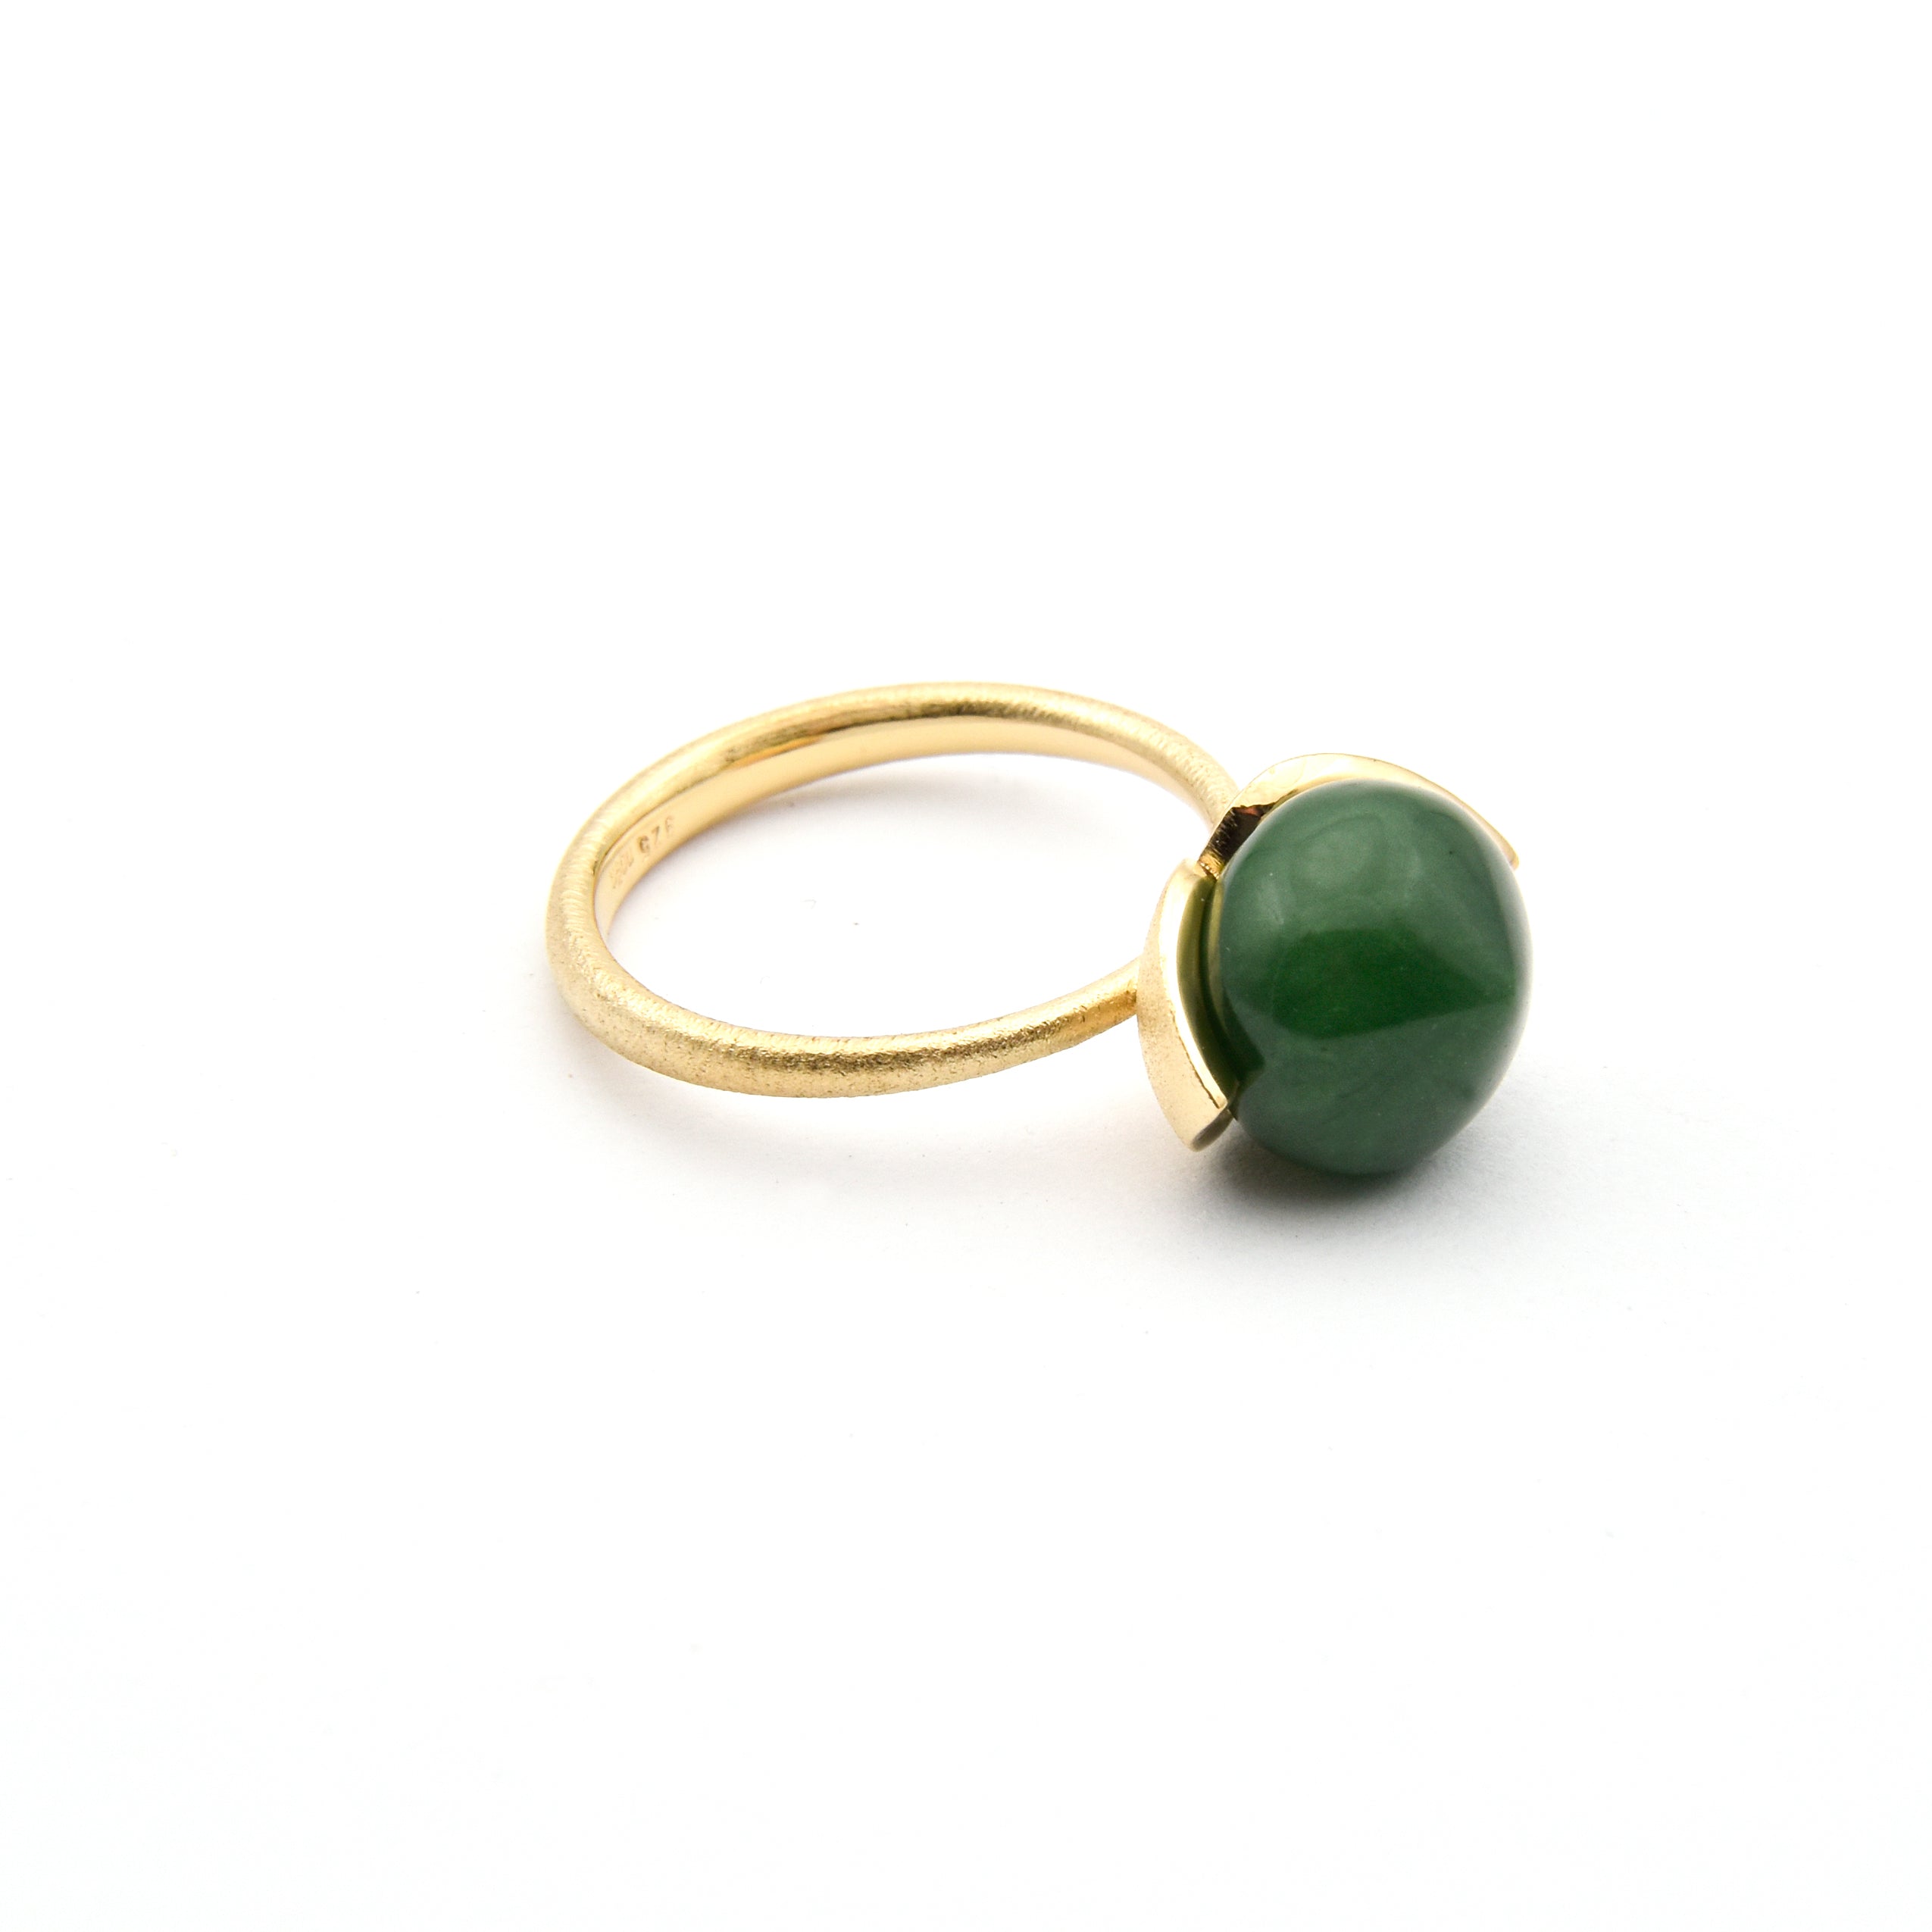 Dolce Ring "medium" mit Jade 925/-